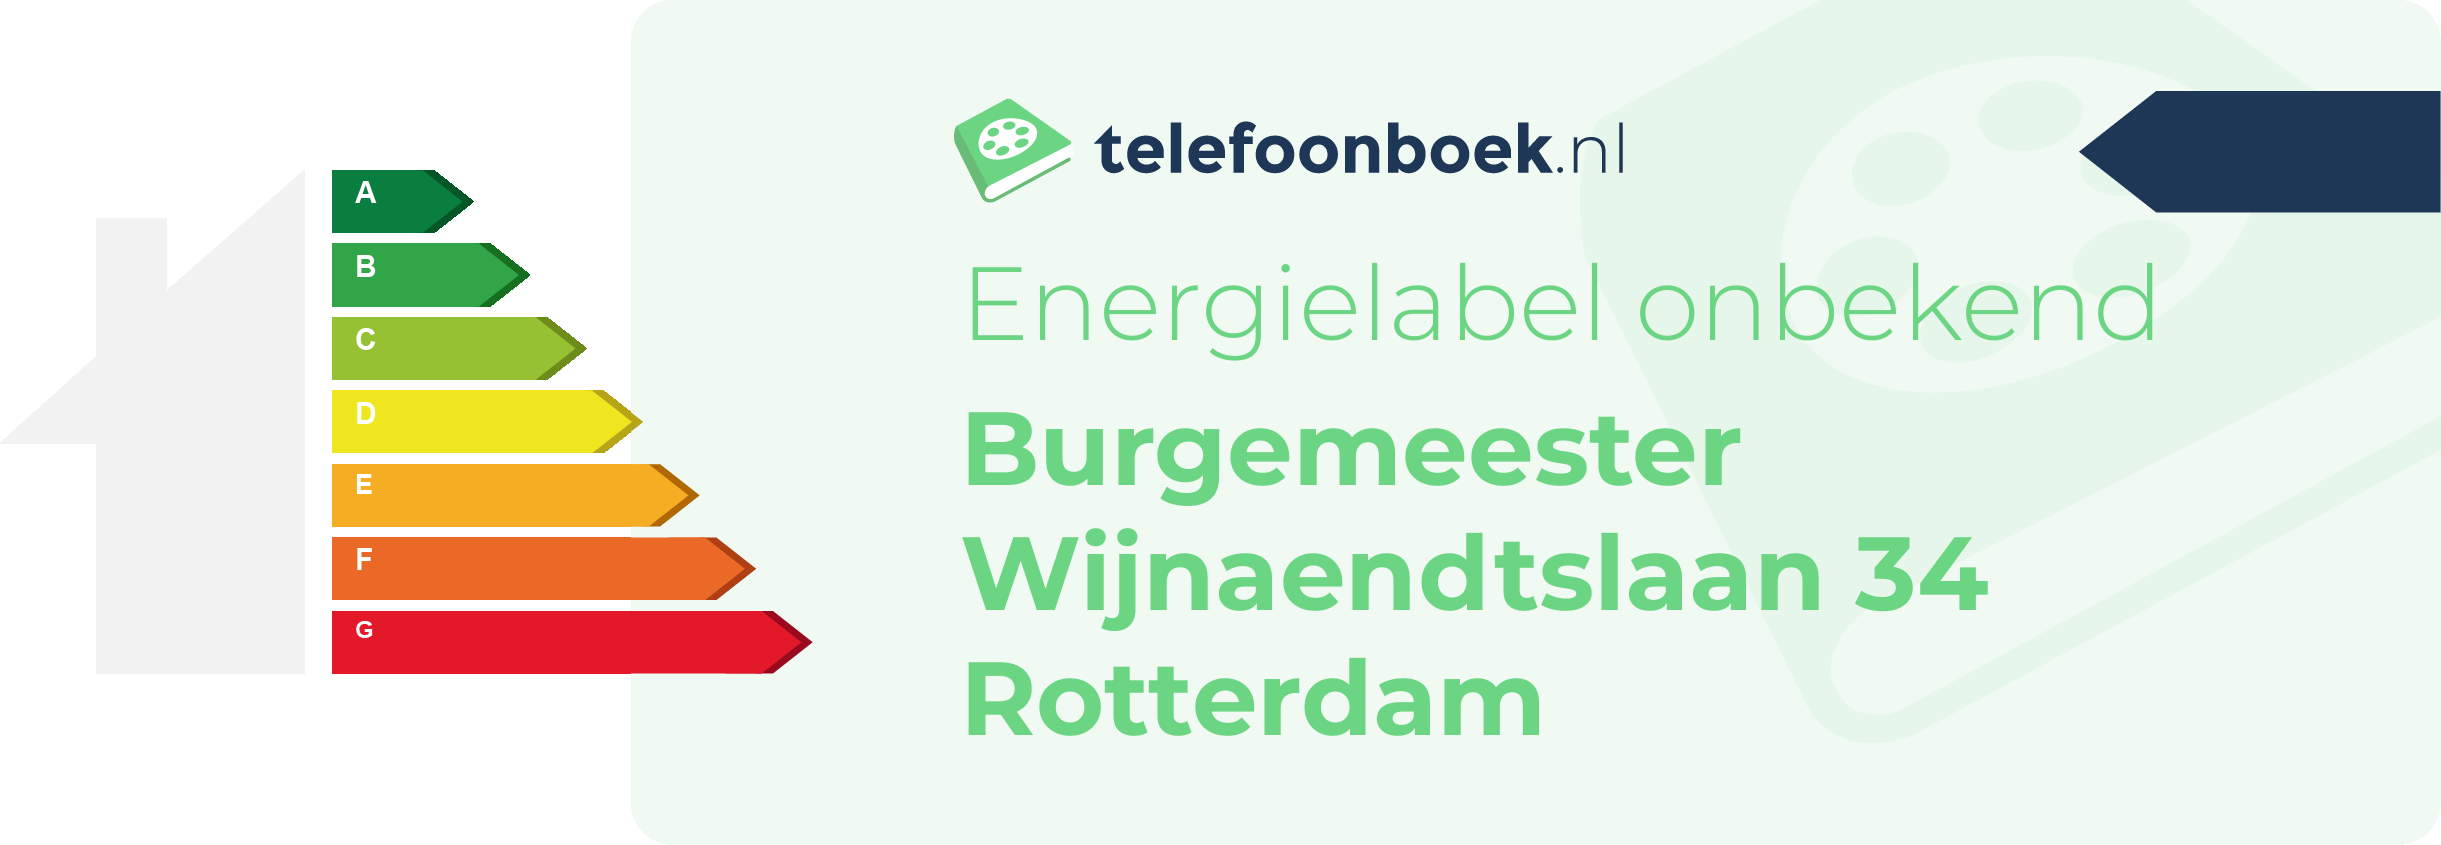 Energielabel Burgemeester Wijnaendtslaan 34 Rotterdam